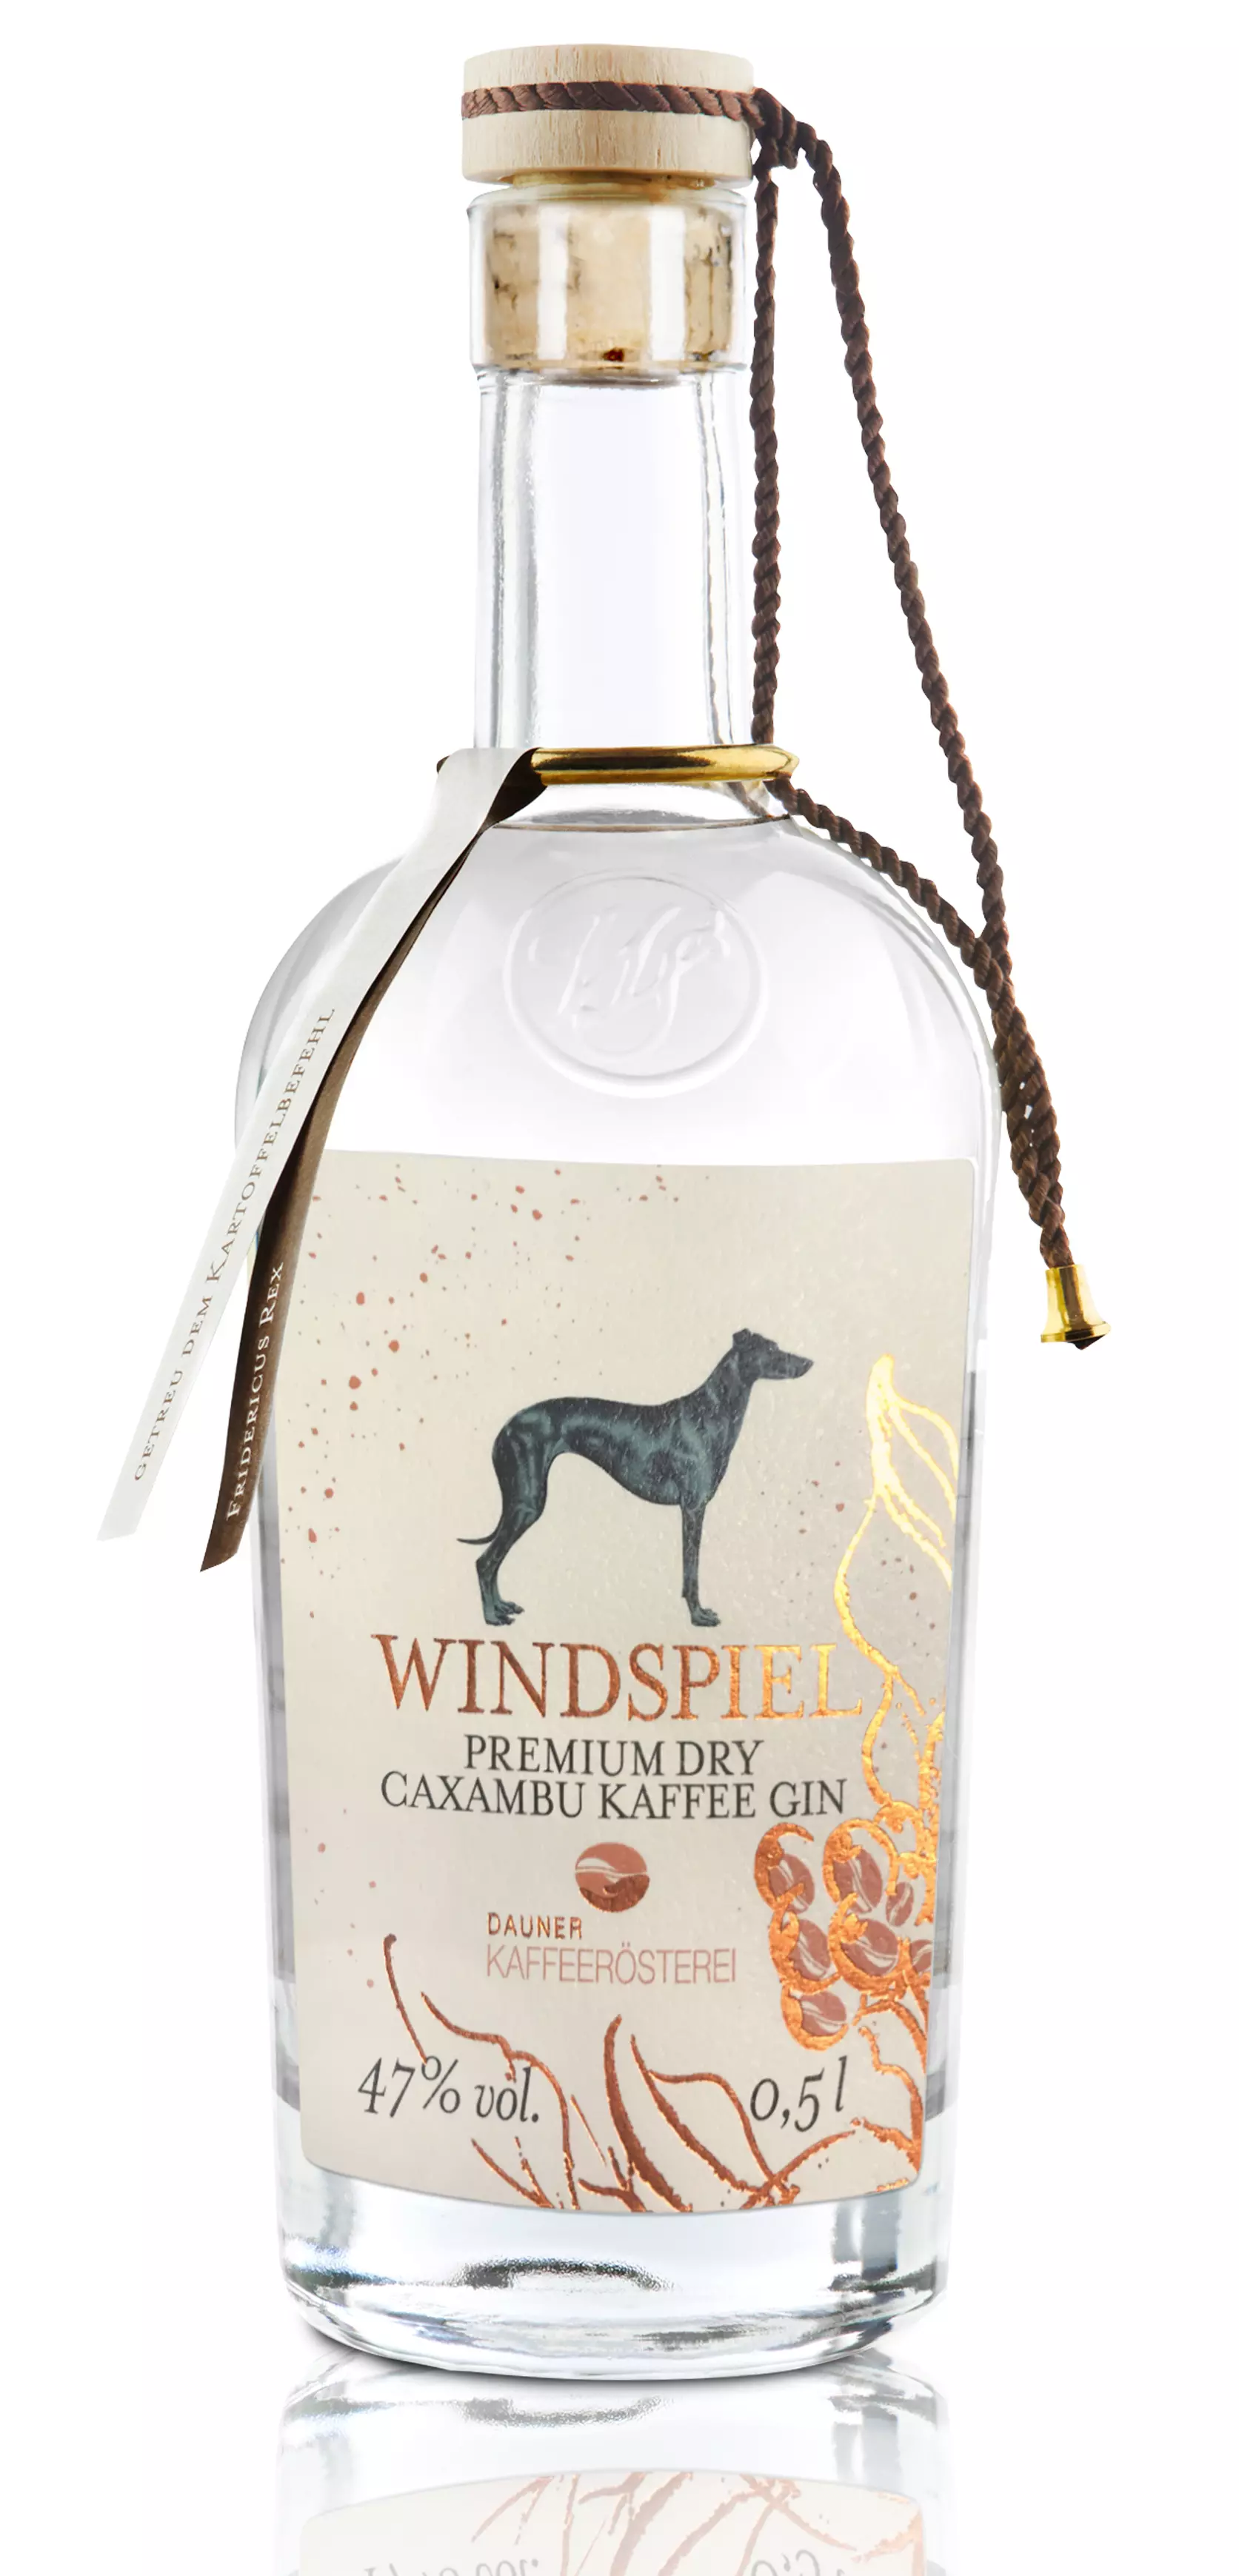 Windspiel Premium Dry Gin Caxambu Kaffee 47% vol. 0,5l